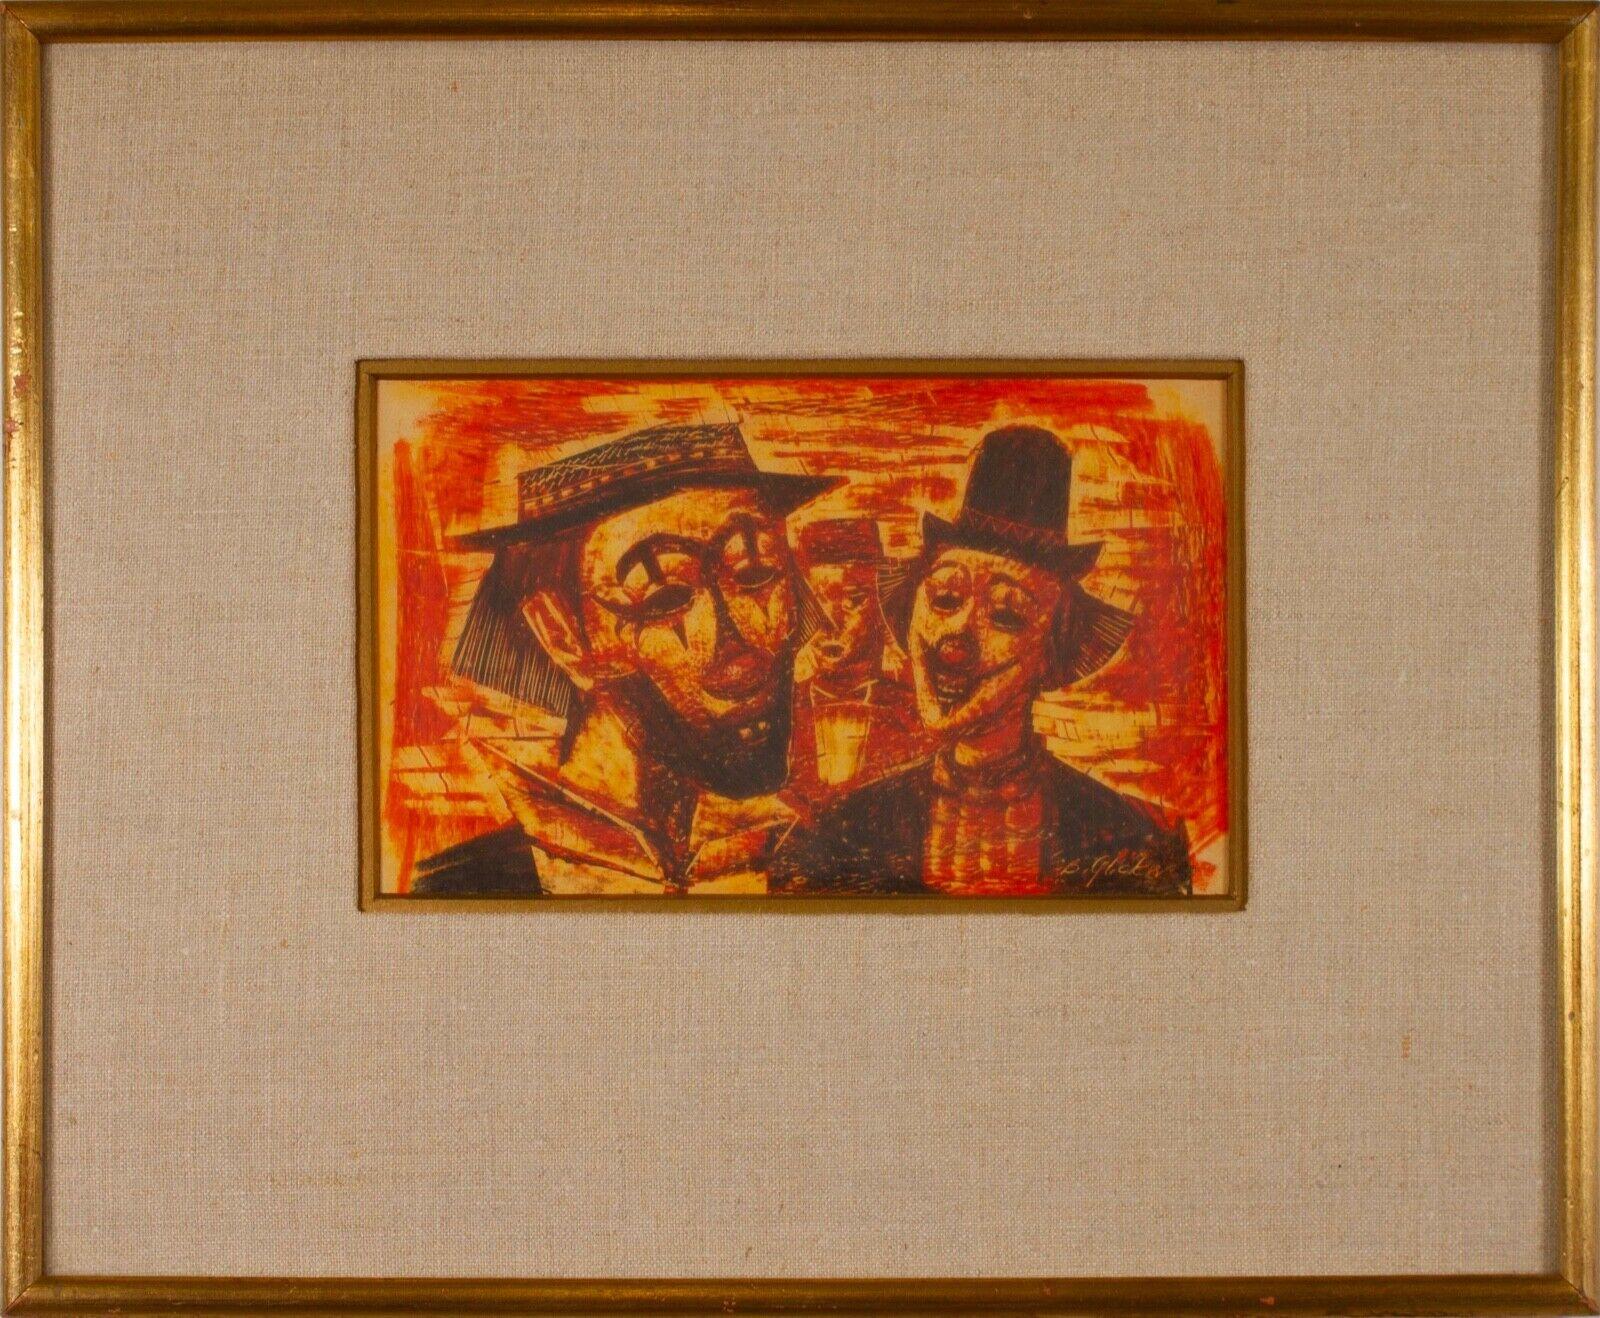 Un dessin expressif du milieu du siècle dernier, réalisé au graphite sur papier, représentant deux clowns, par l'artiste Benjamin Glicker, basé dans le Michigan. Signé en bas à droite. Vers les années 60. Benjamin Glicker a été un enseignant